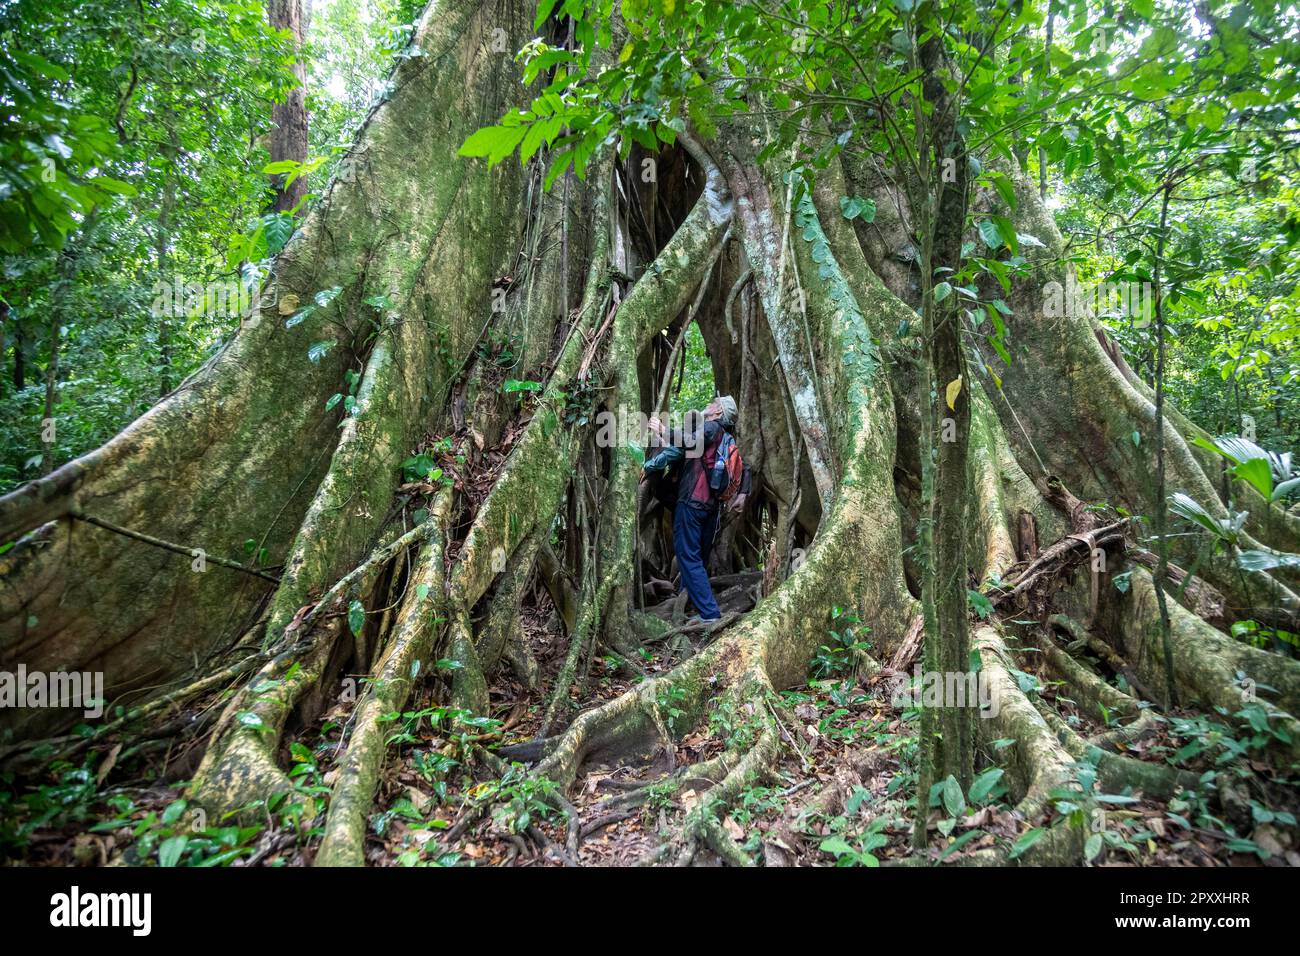 Muelle San Carlos, Costa Rica - Touristen gehen durch einen Ficusbaum im Costa-rikanischen Regenwald. Stockfoto